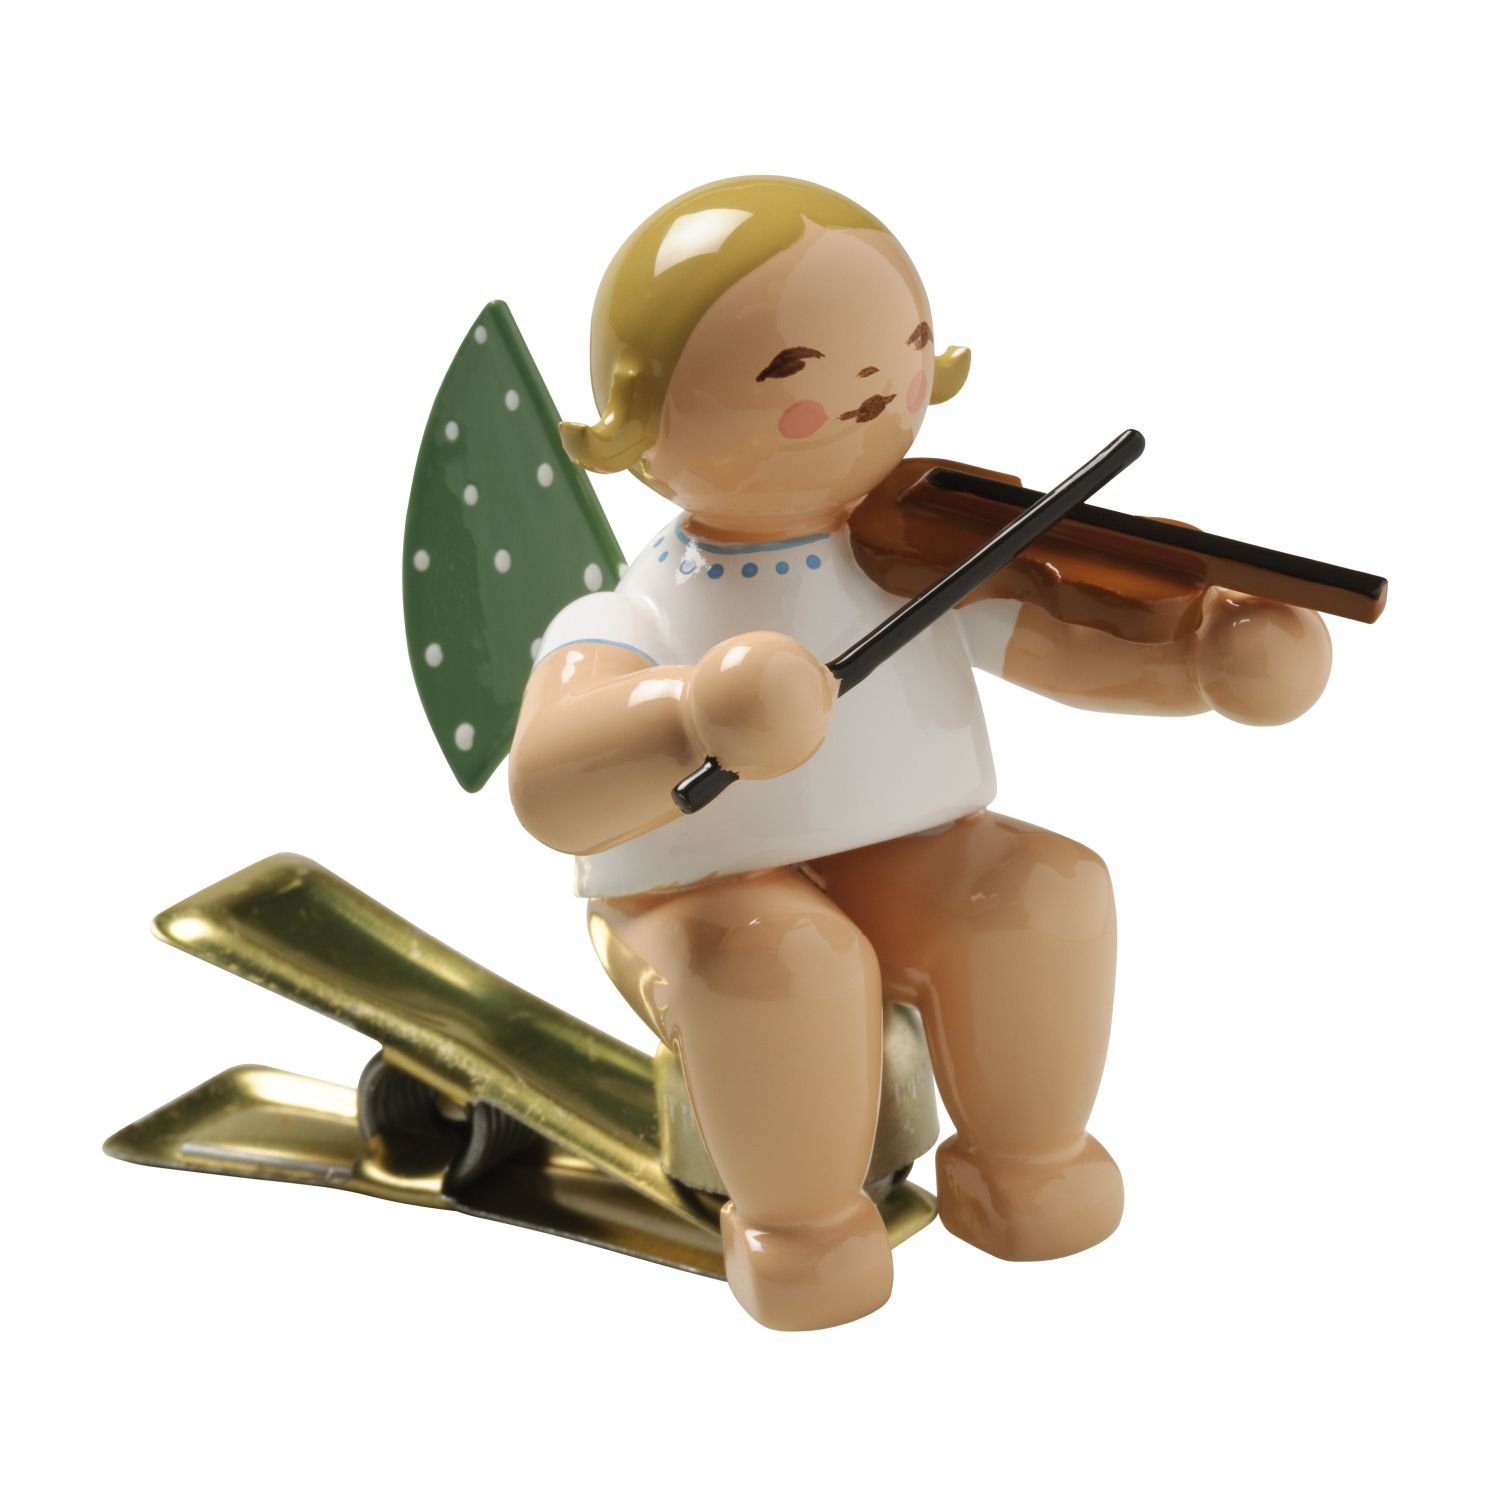 Wendt & Kühn Weihnachtsfigur Engel mit Geige auf Klemme 650/90/2, zufällig blond oder braunhaarig